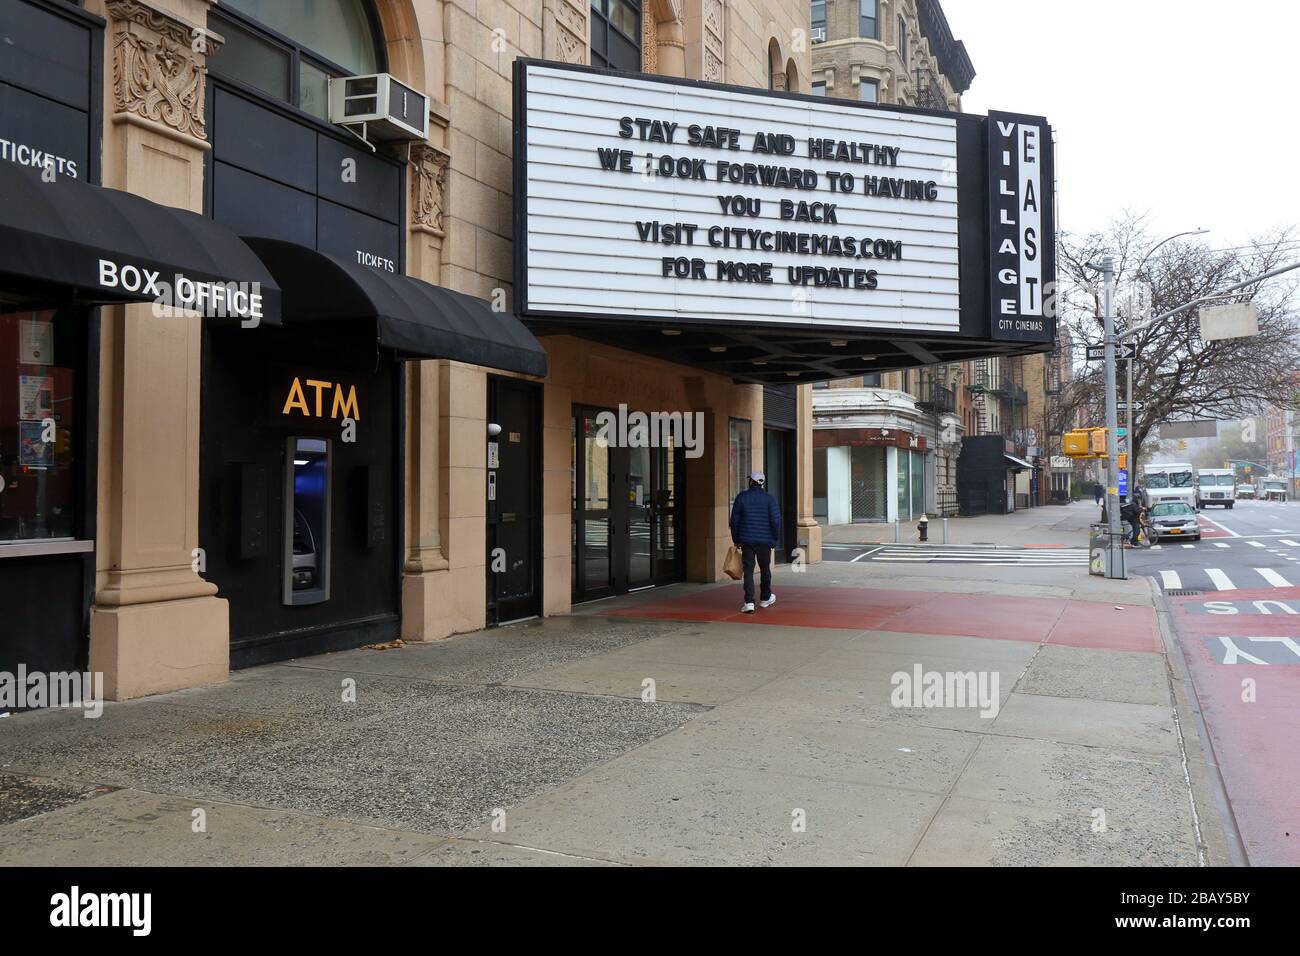 New York, NY, 29 mars 2020. Des rues vides et un cinéma fermé dans le quartier East Village de Manhattan avec un message « Say Safe and Healthy » sur son marquis pendant la pandémie de Coronavirus COVID-19. Crédit: Robert K. Chin. Banque D'Images